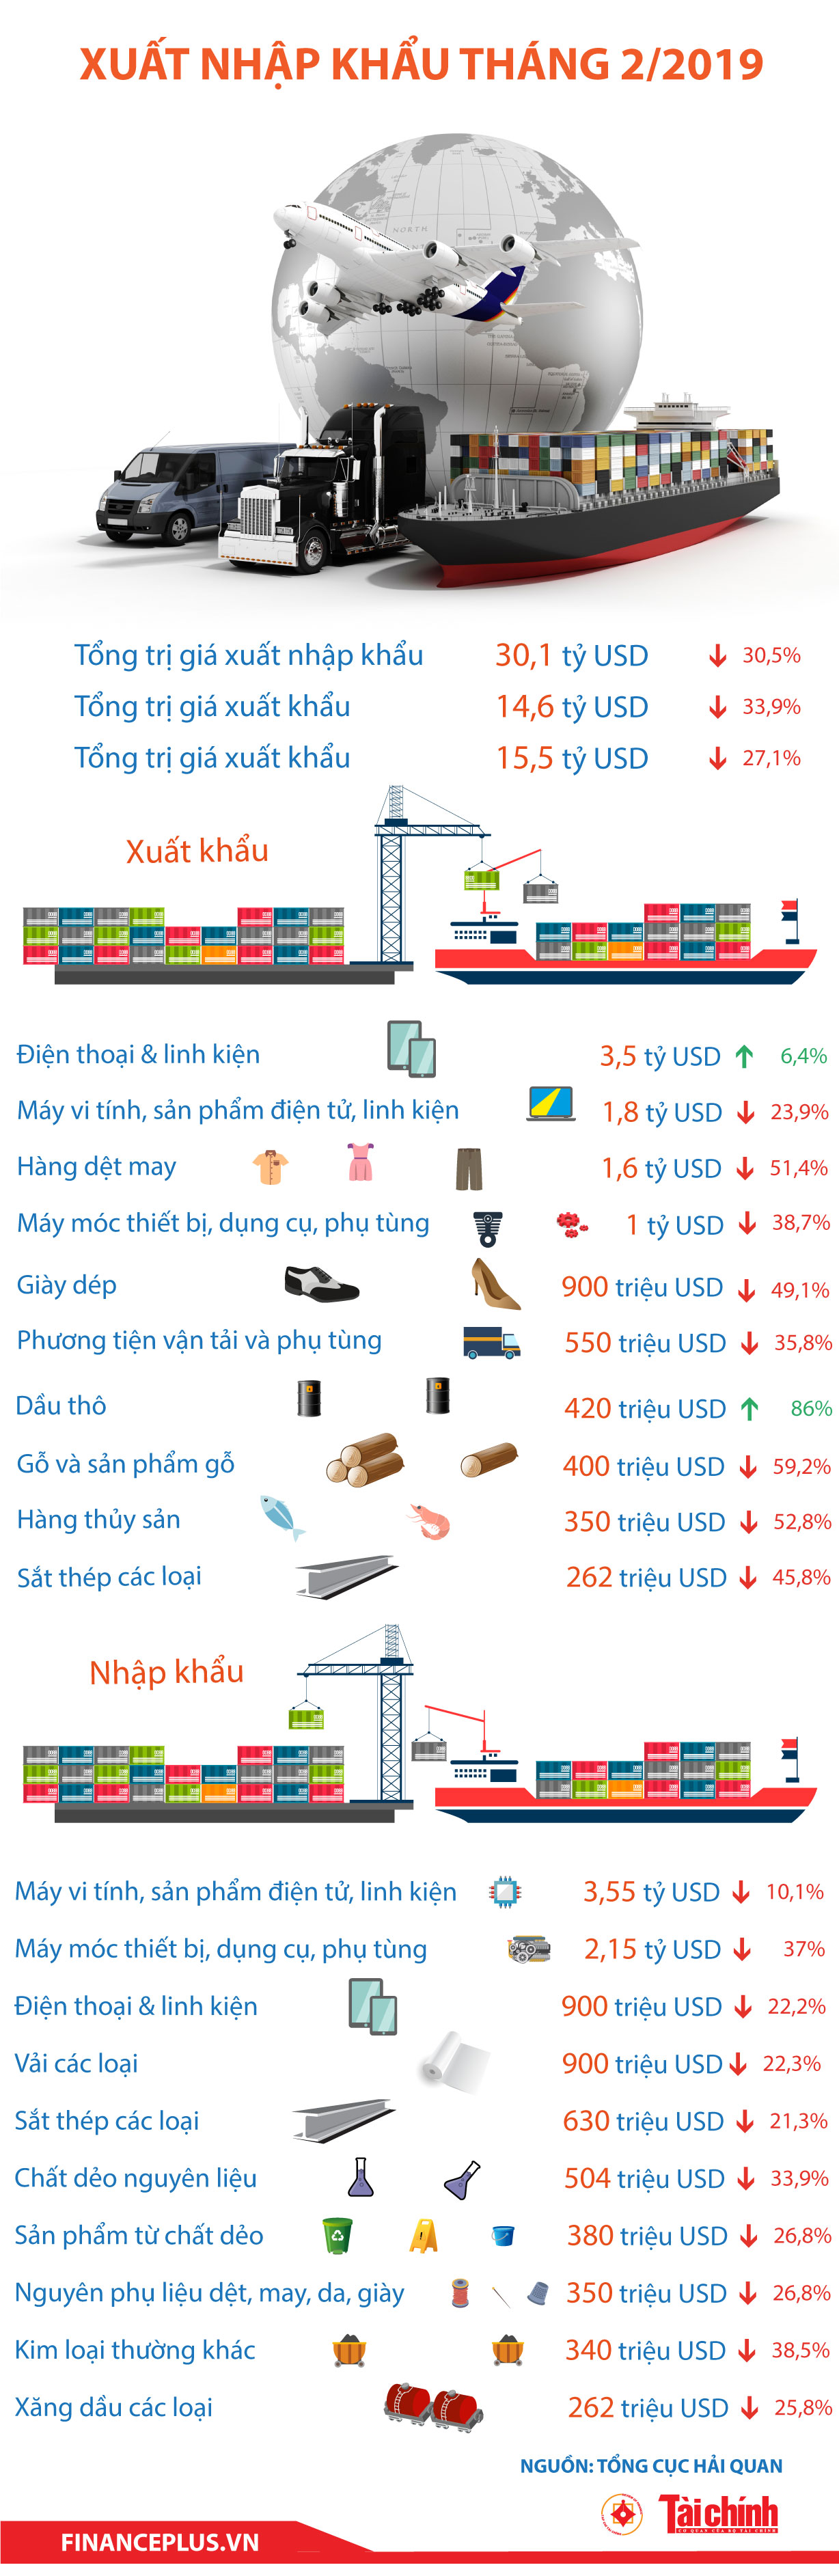 [Infographic] Xuất nhập khẩu tháng 2/2019 - Ảnh 1